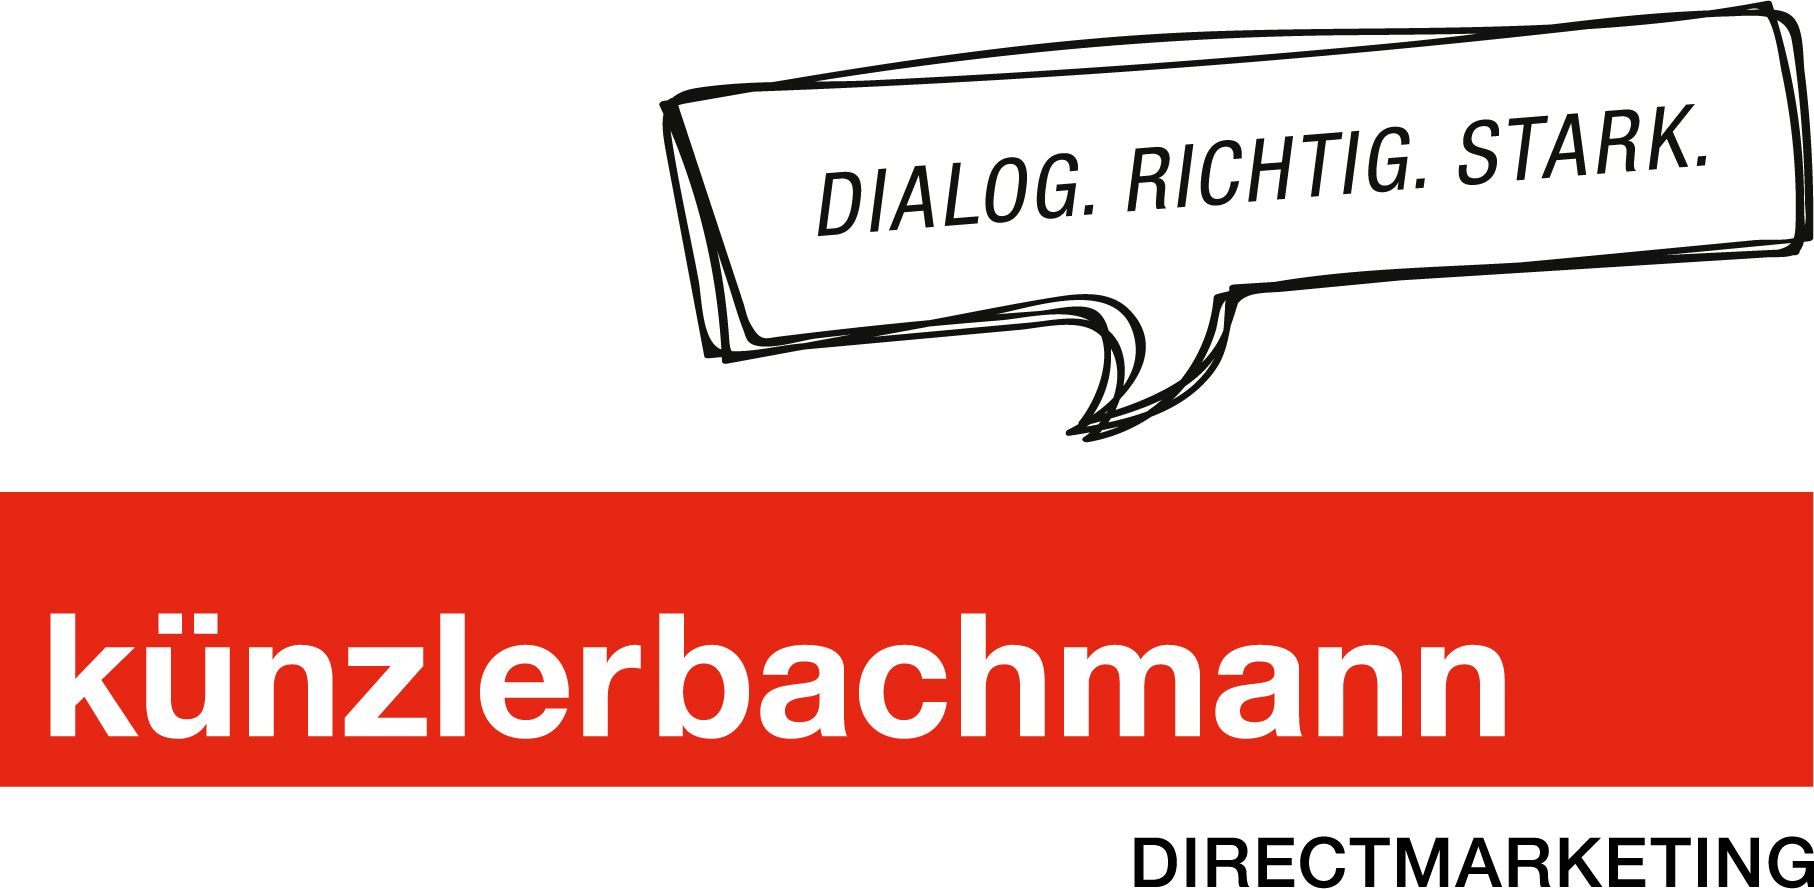 KünzlerBachmann Directmarketing nach Integration von Schober Schweiz mit neuem Familienwappen